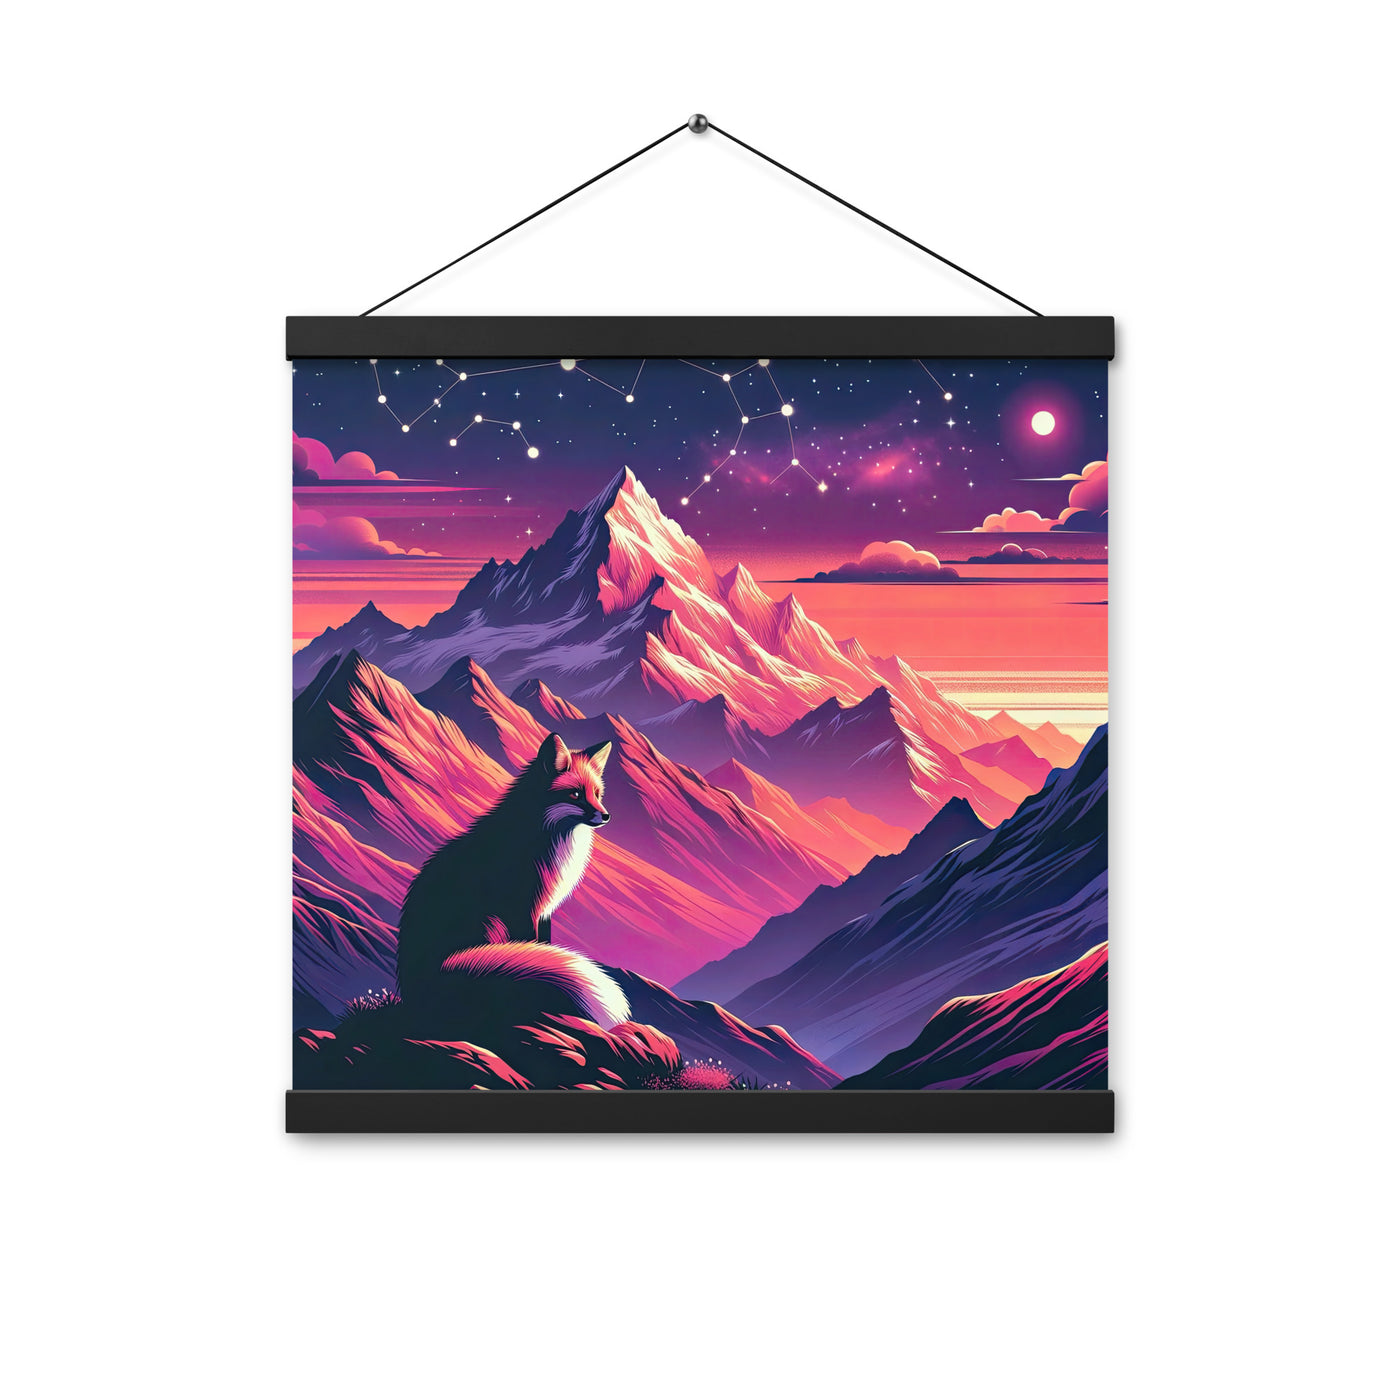 Fuchs im dramatischen Sonnenuntergang: Digitale Bergillustration in Abendfarben - Premium Poster mit Aufhängung camping xxx yyy zzz 40.6 x 40.6 cm